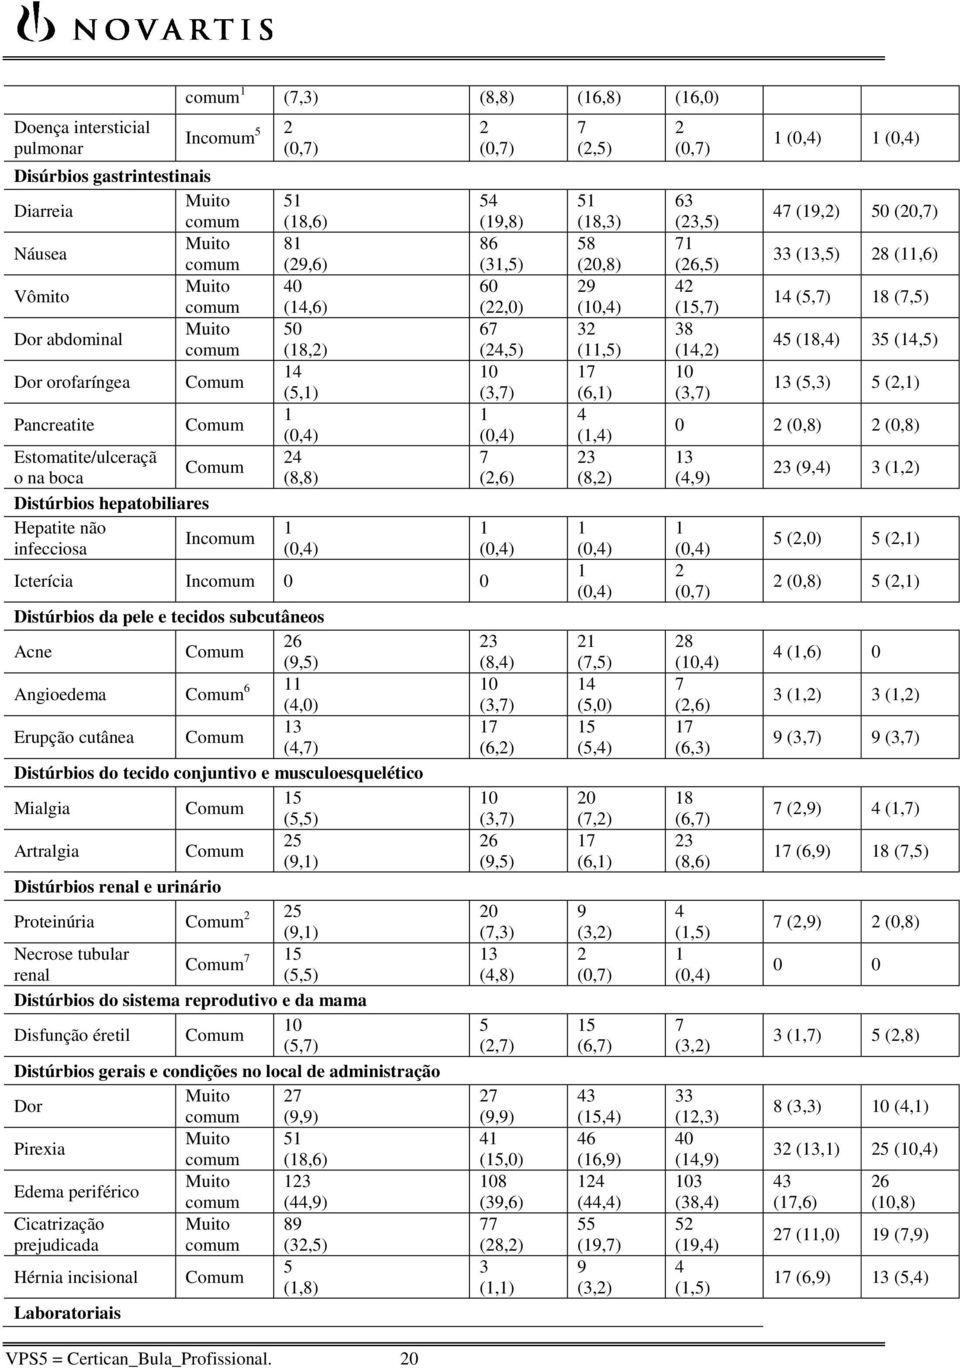 Angioedema 6 11 (4,0) Erupção cutânea 13 (4,7) Distúrbios do tecido conjuntivo e musculoesquelético Mialgia 15 (5,5) Artralgia 25 (9,1) Distúrbios renal e urinário Proteinúria 2 25 (9,1) Necrose